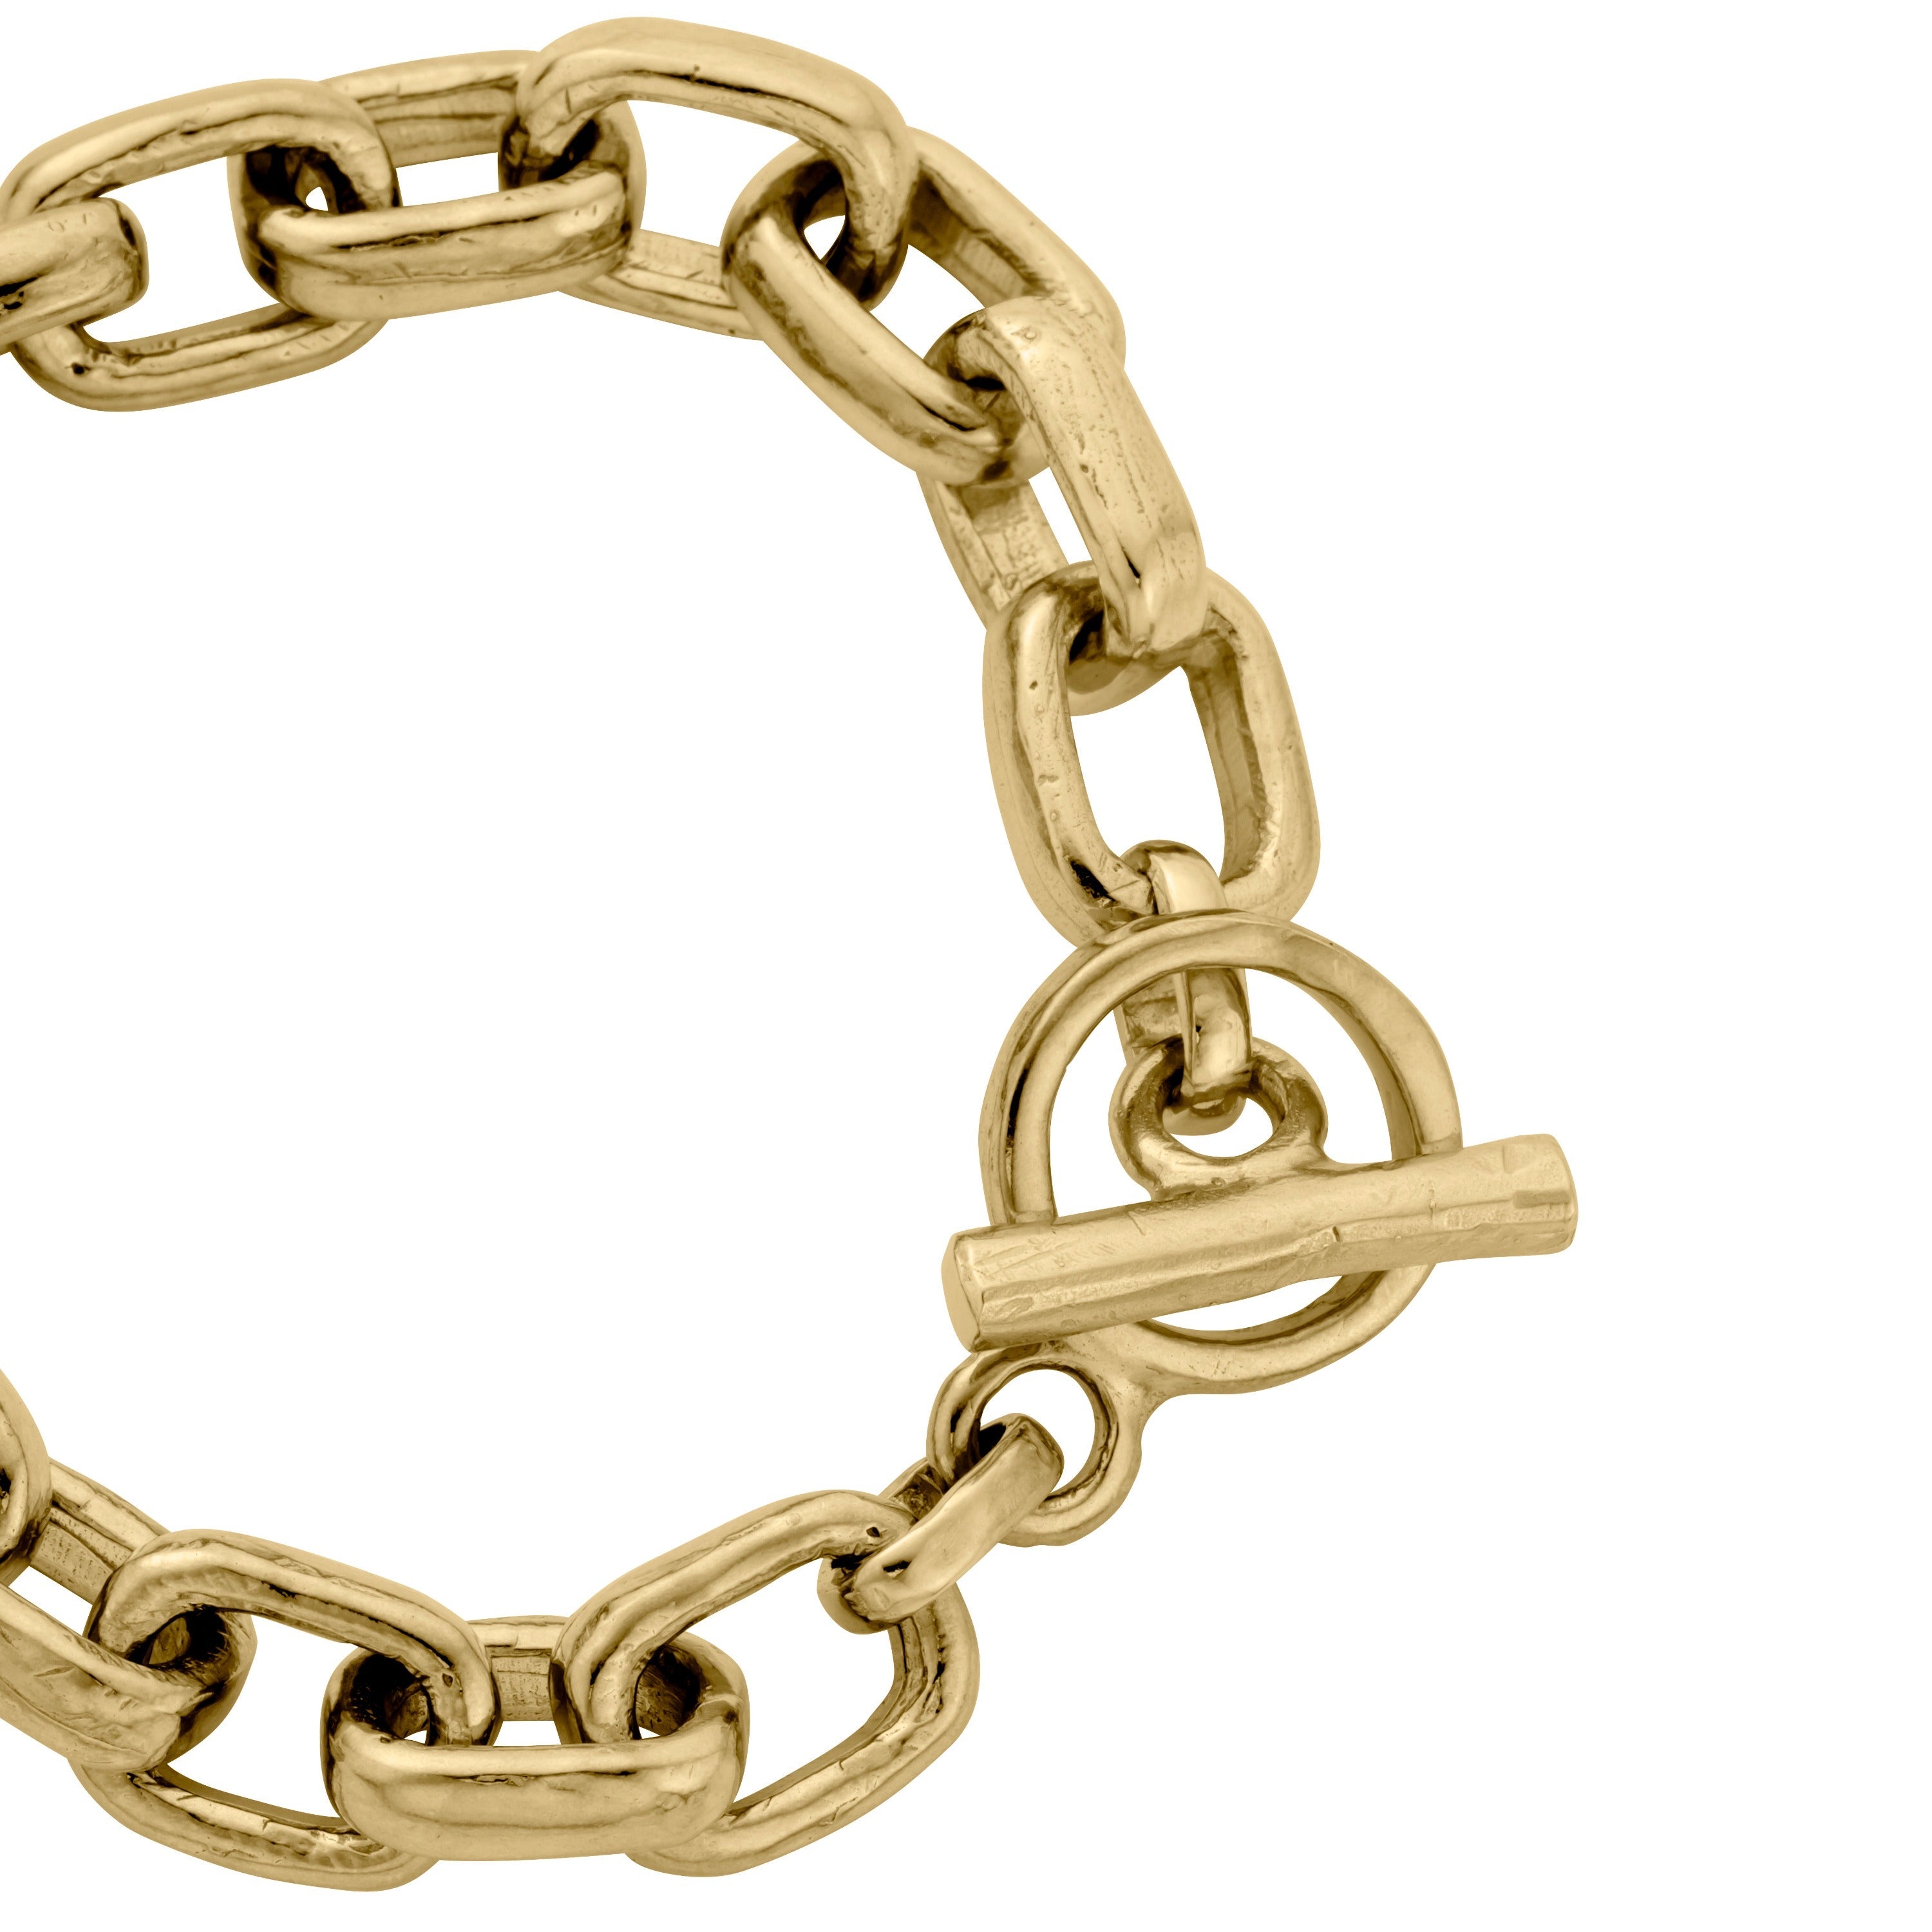 Buy The Silver Mini Monaco Bracelet From British Jewellery Designer  Daniella Draper – Daniella Draper UK